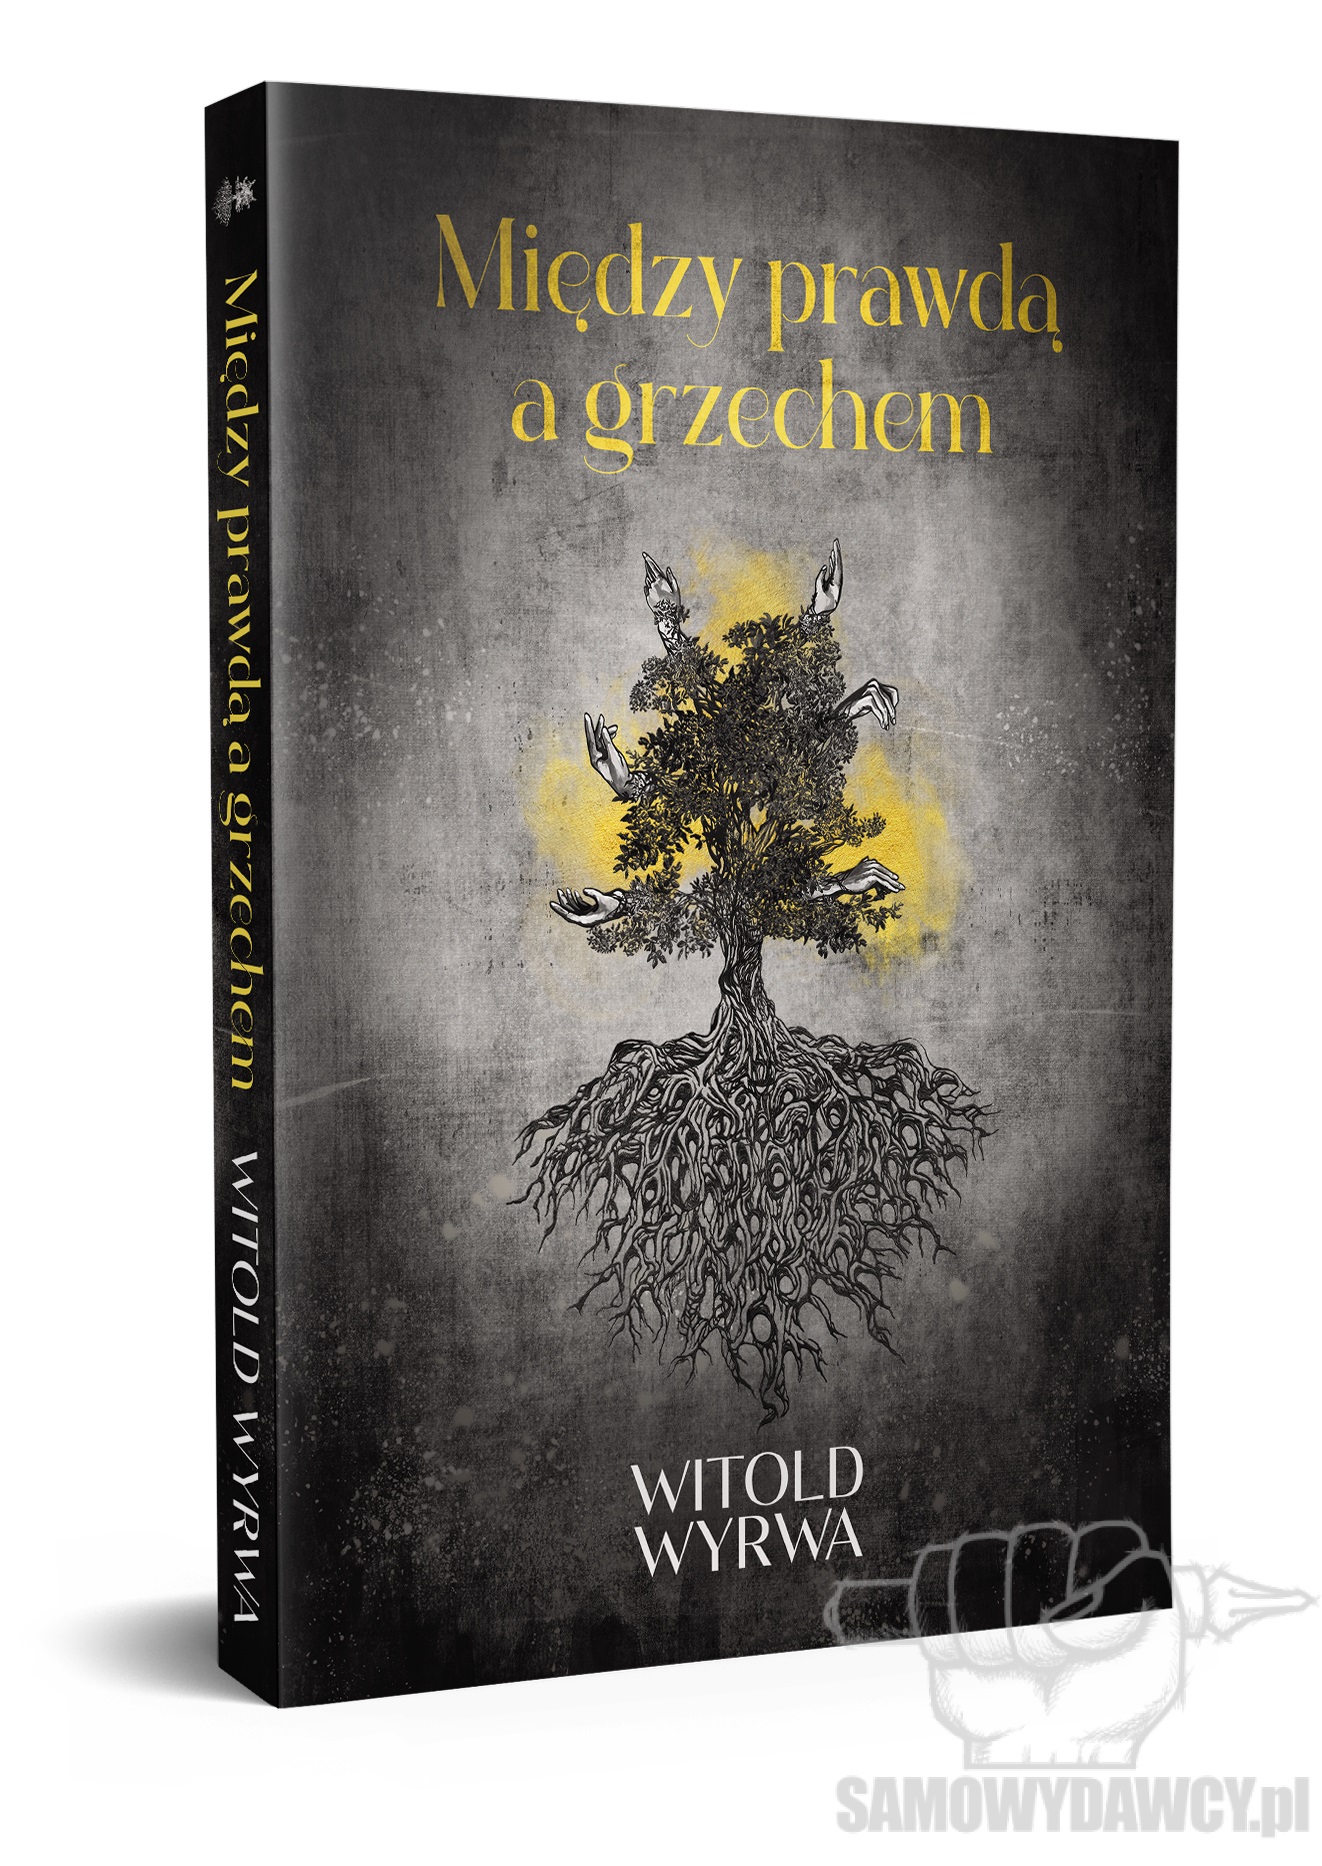 Między prawdą a grzechem - Witold Wyrwa Samowydawcy.pl